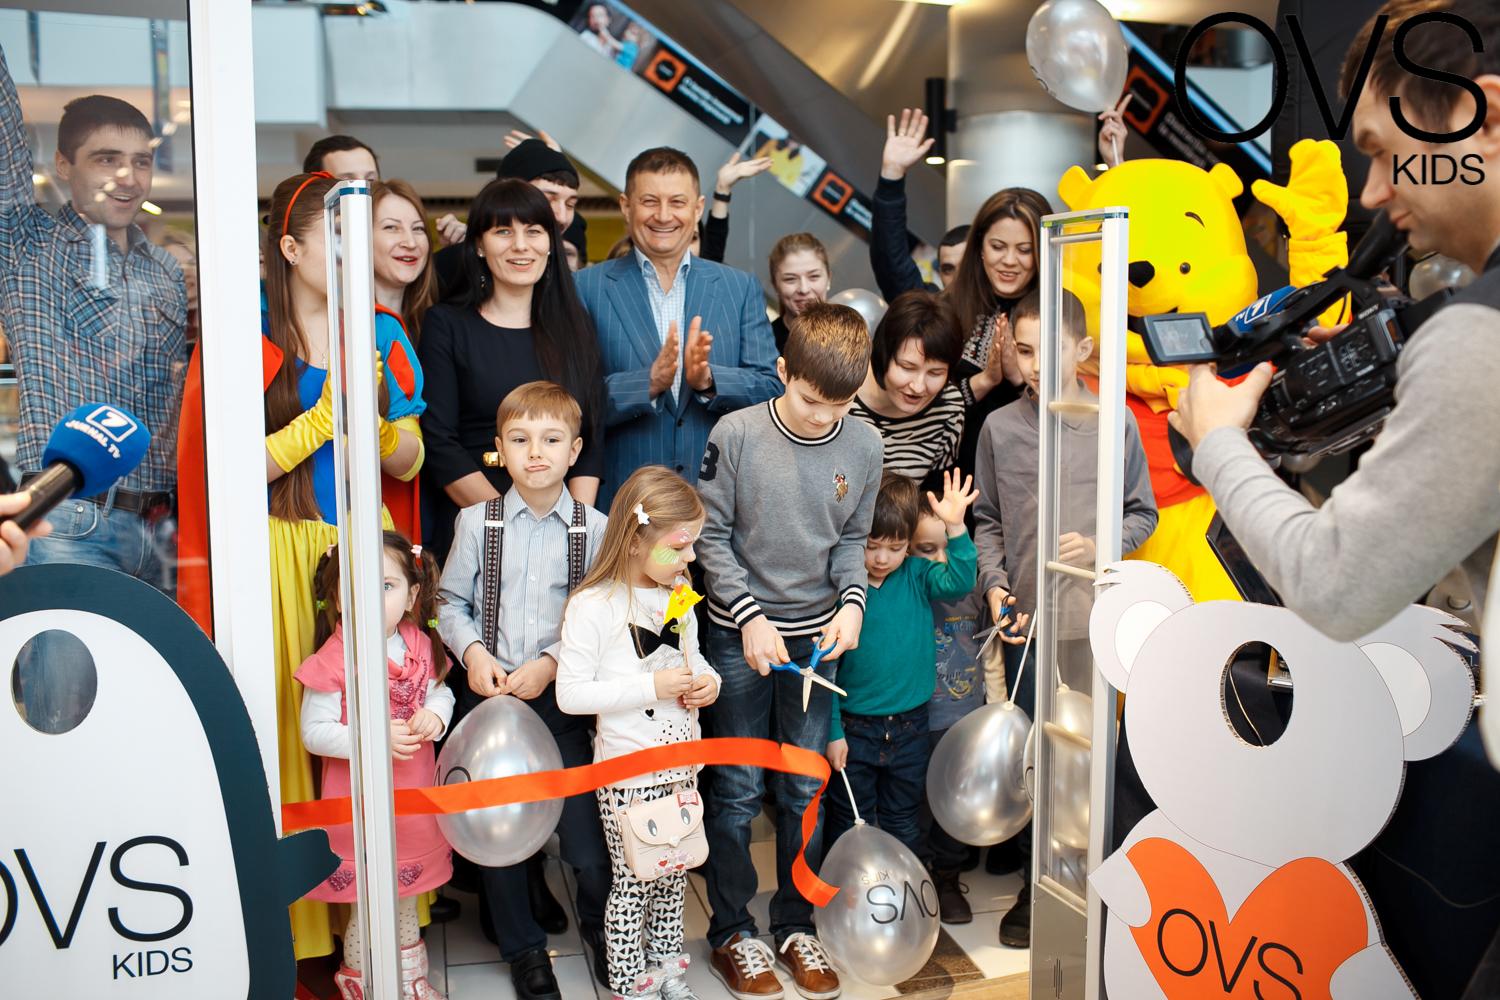 Deschiderea magazinului de haine pentru copii OVS Kids